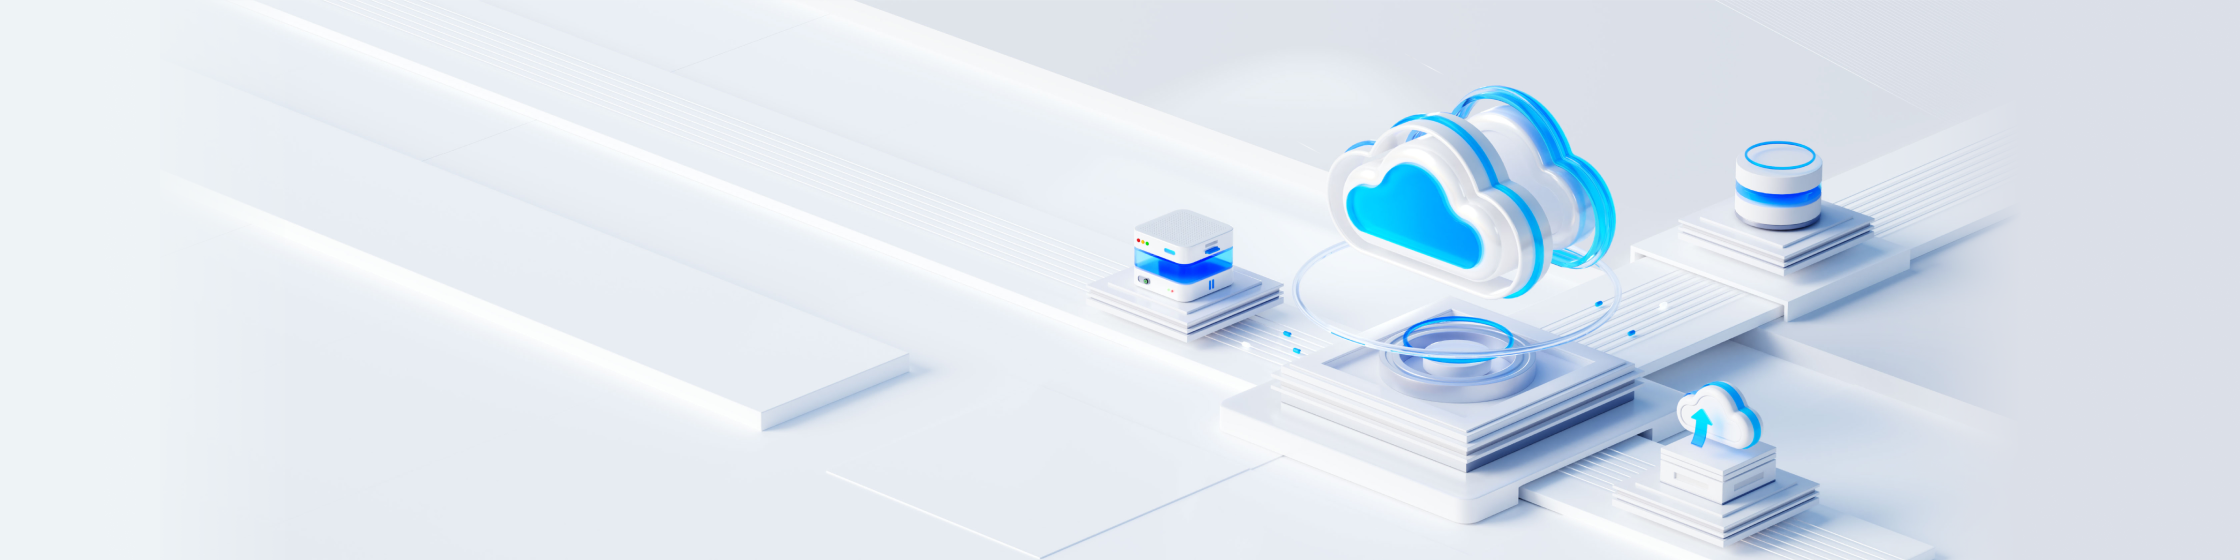 Enterprise Cloud